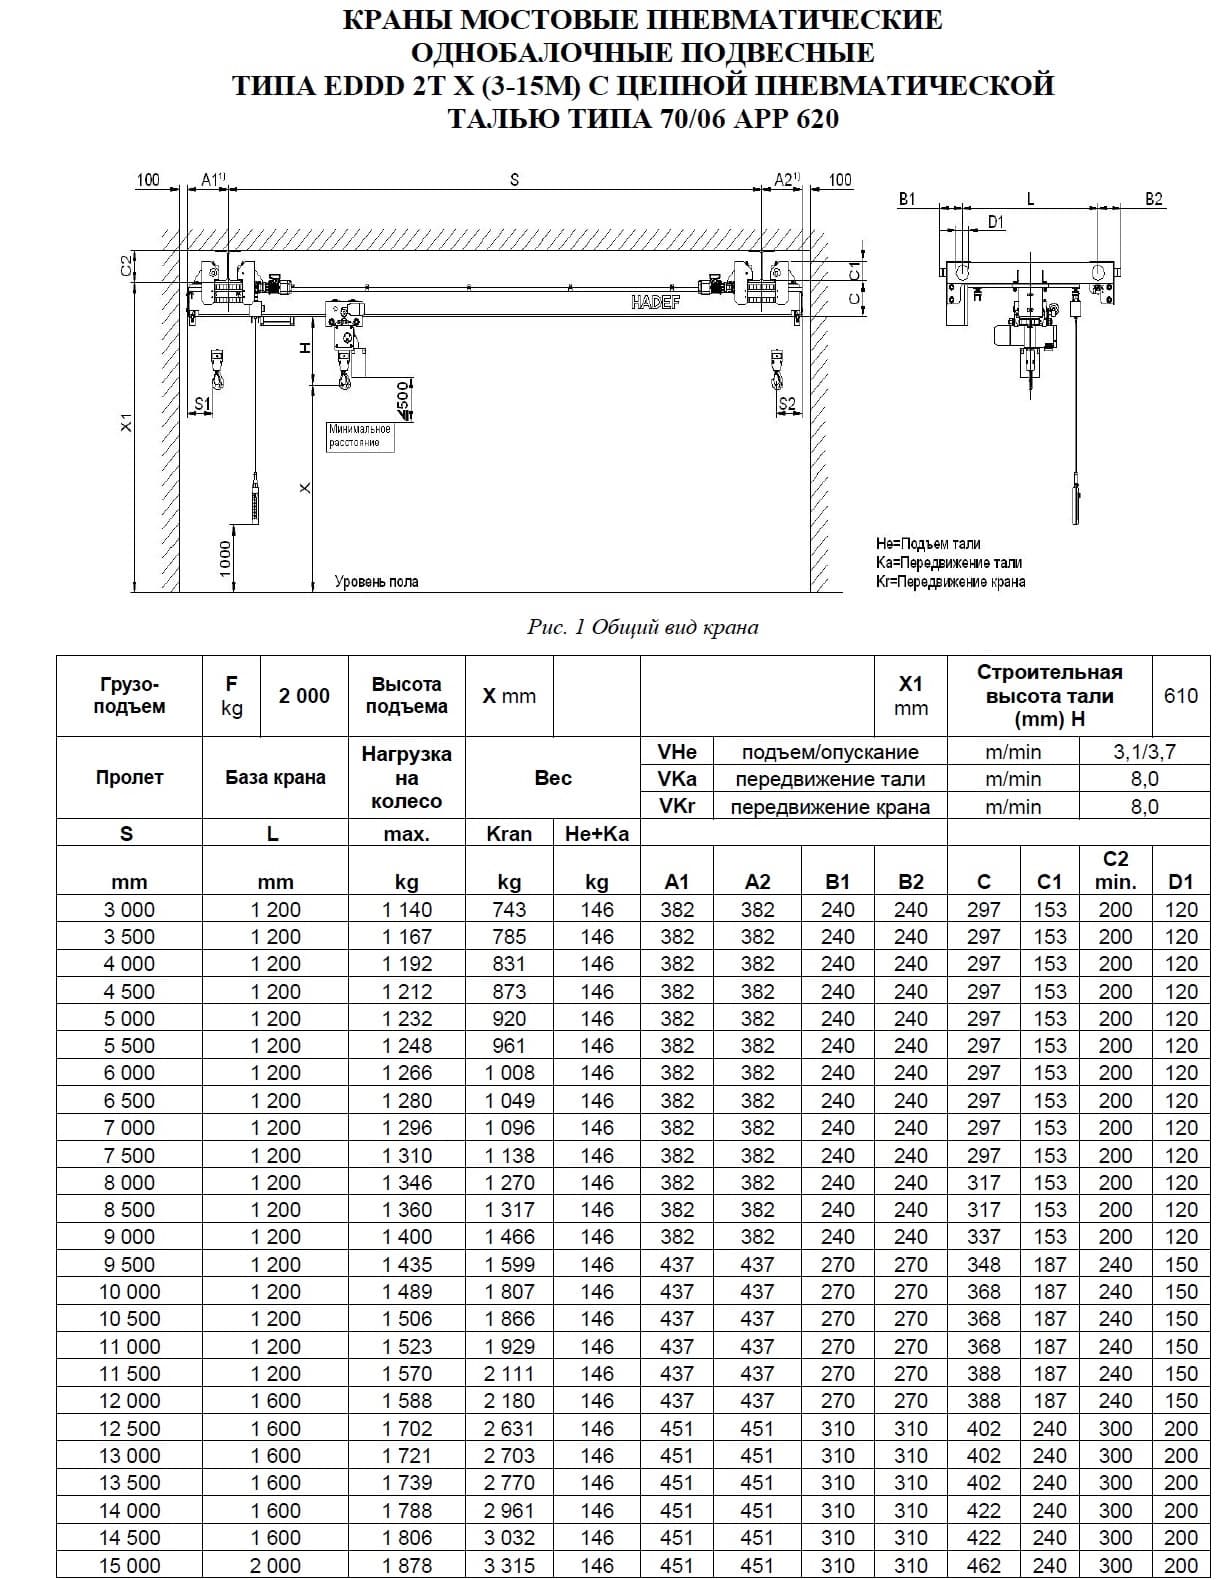 Тех. характеристики для Кран мостовой пневматический подвесной тип EDDD, HADEF, Германия Кран мостовой пневматический подвесной тип EDDD 2,0 т пролет 3-15 м, HADEF, Германия